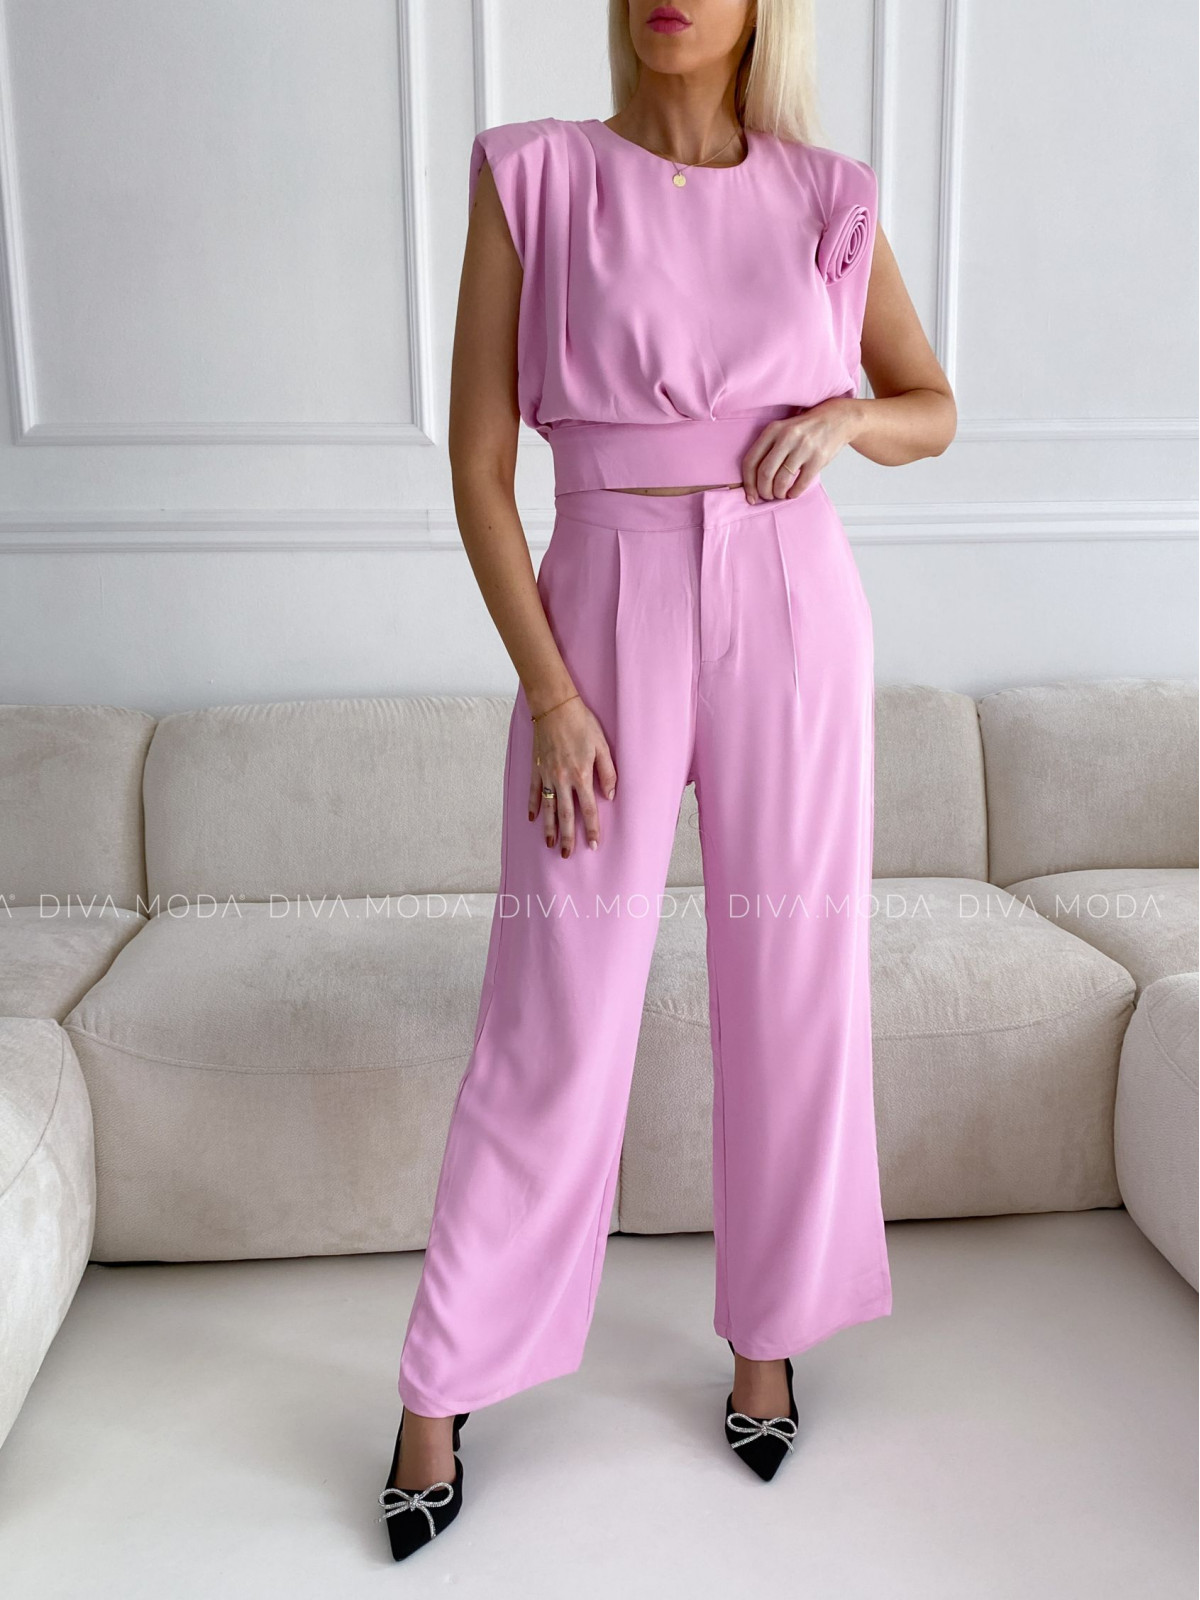 Elegantní komplet kalhoty + top rose růžový P 80